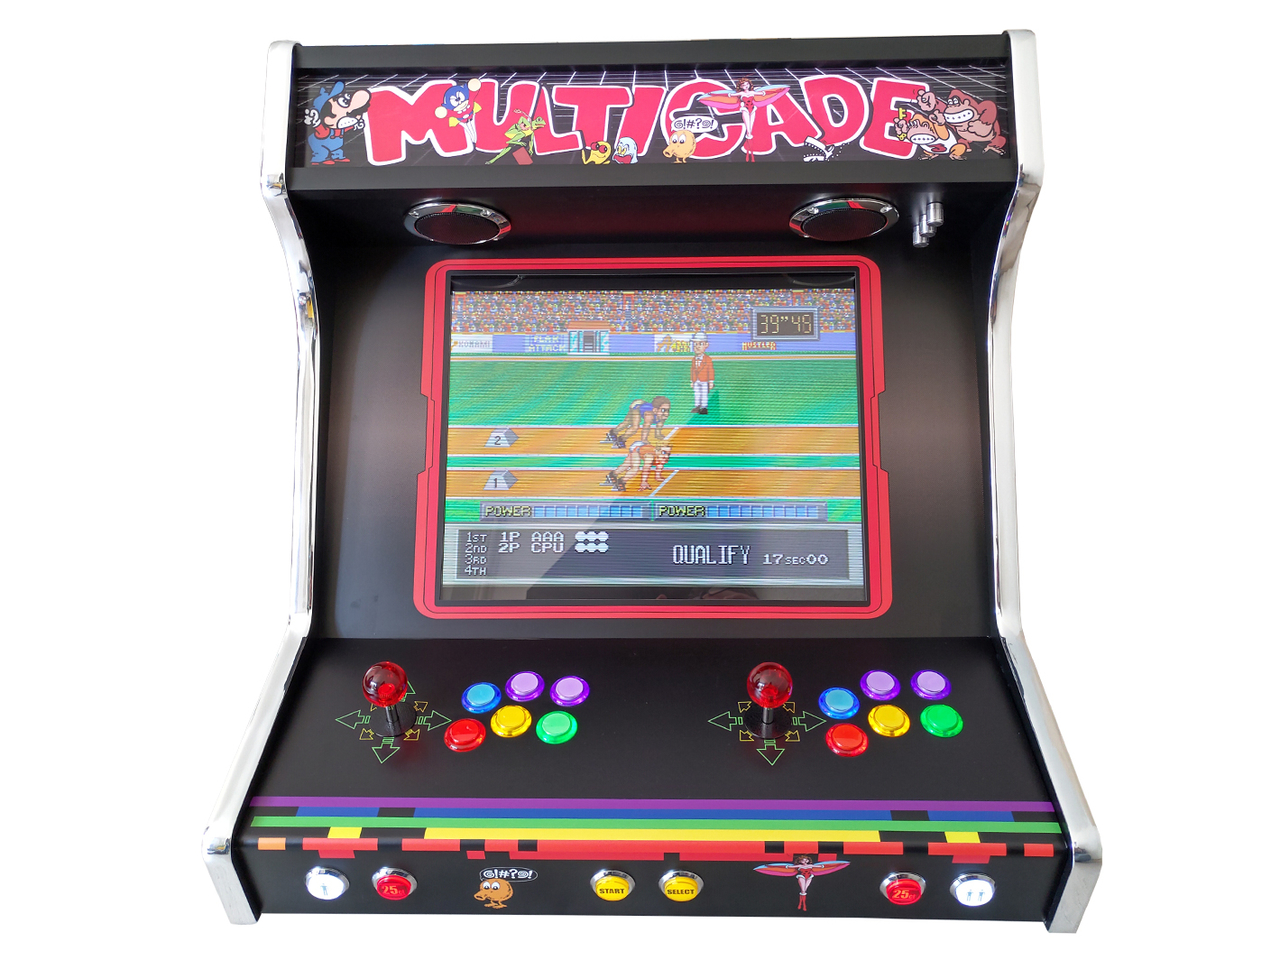 Borne d'arcade bartop 2 joueurs 6296 jeux PAC – 56 x 50 x 66 cm - Devessport